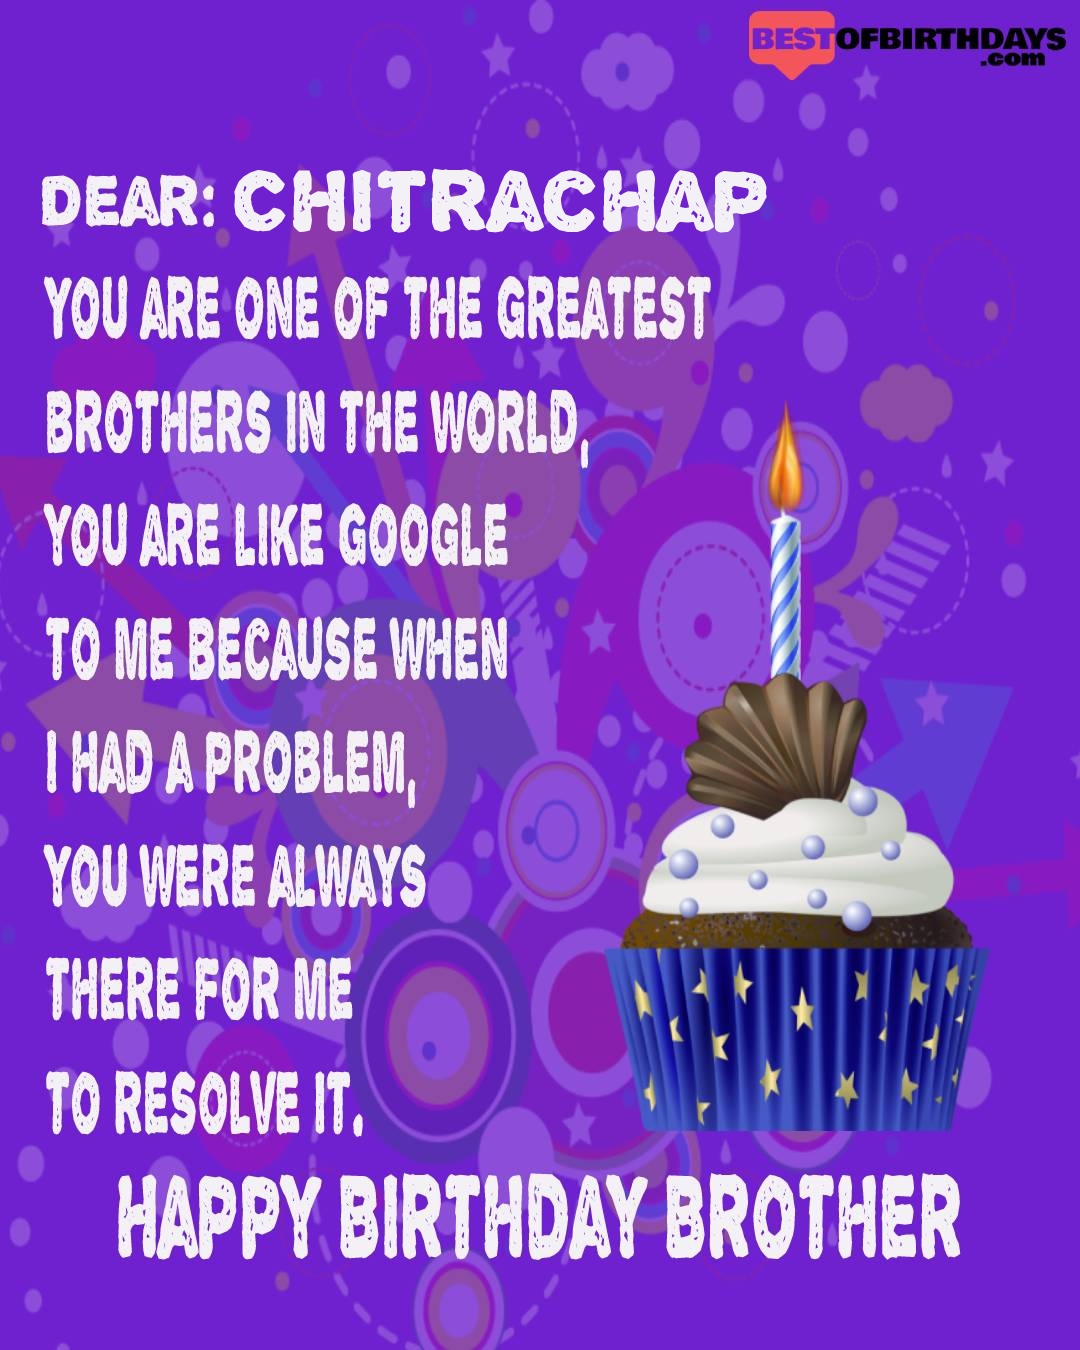 Happy birthday chitrachap bhai brother bro